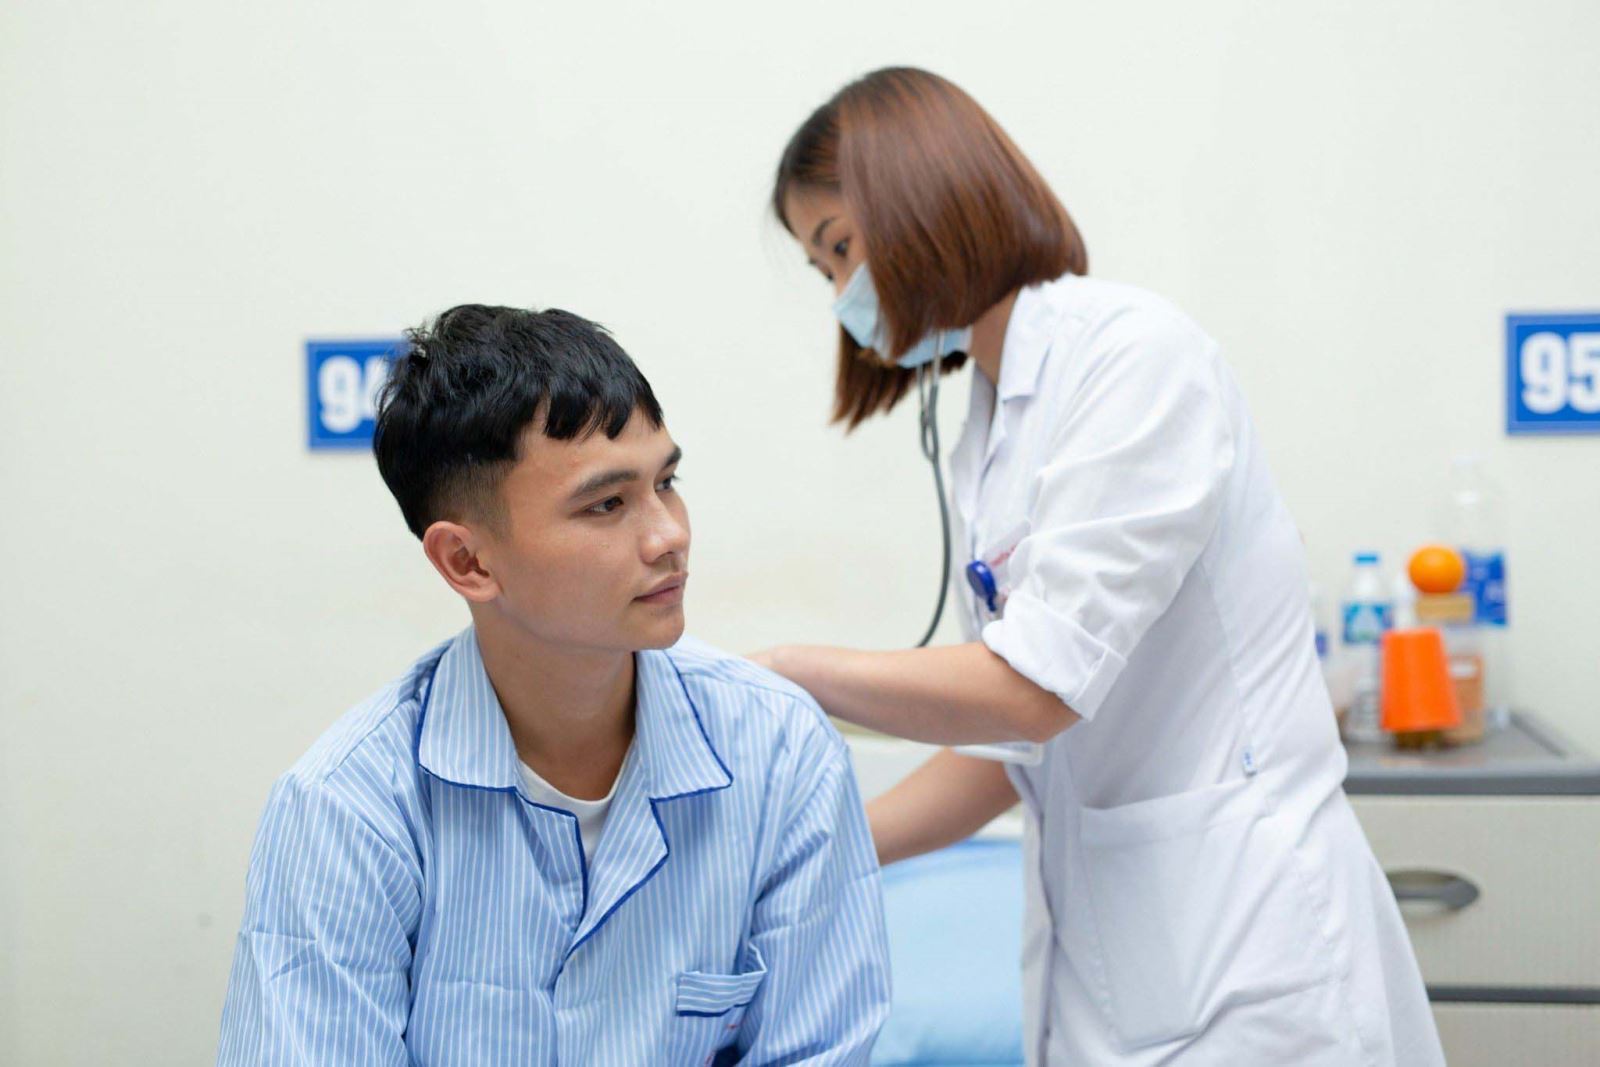 Bác sĩ Lưu Thu Hương thăm khám cho bệnh nhân Đoàn tại Khoa Bệnh máu tổng hợp, Viện Huyết học - Truyền máu Trung ương.